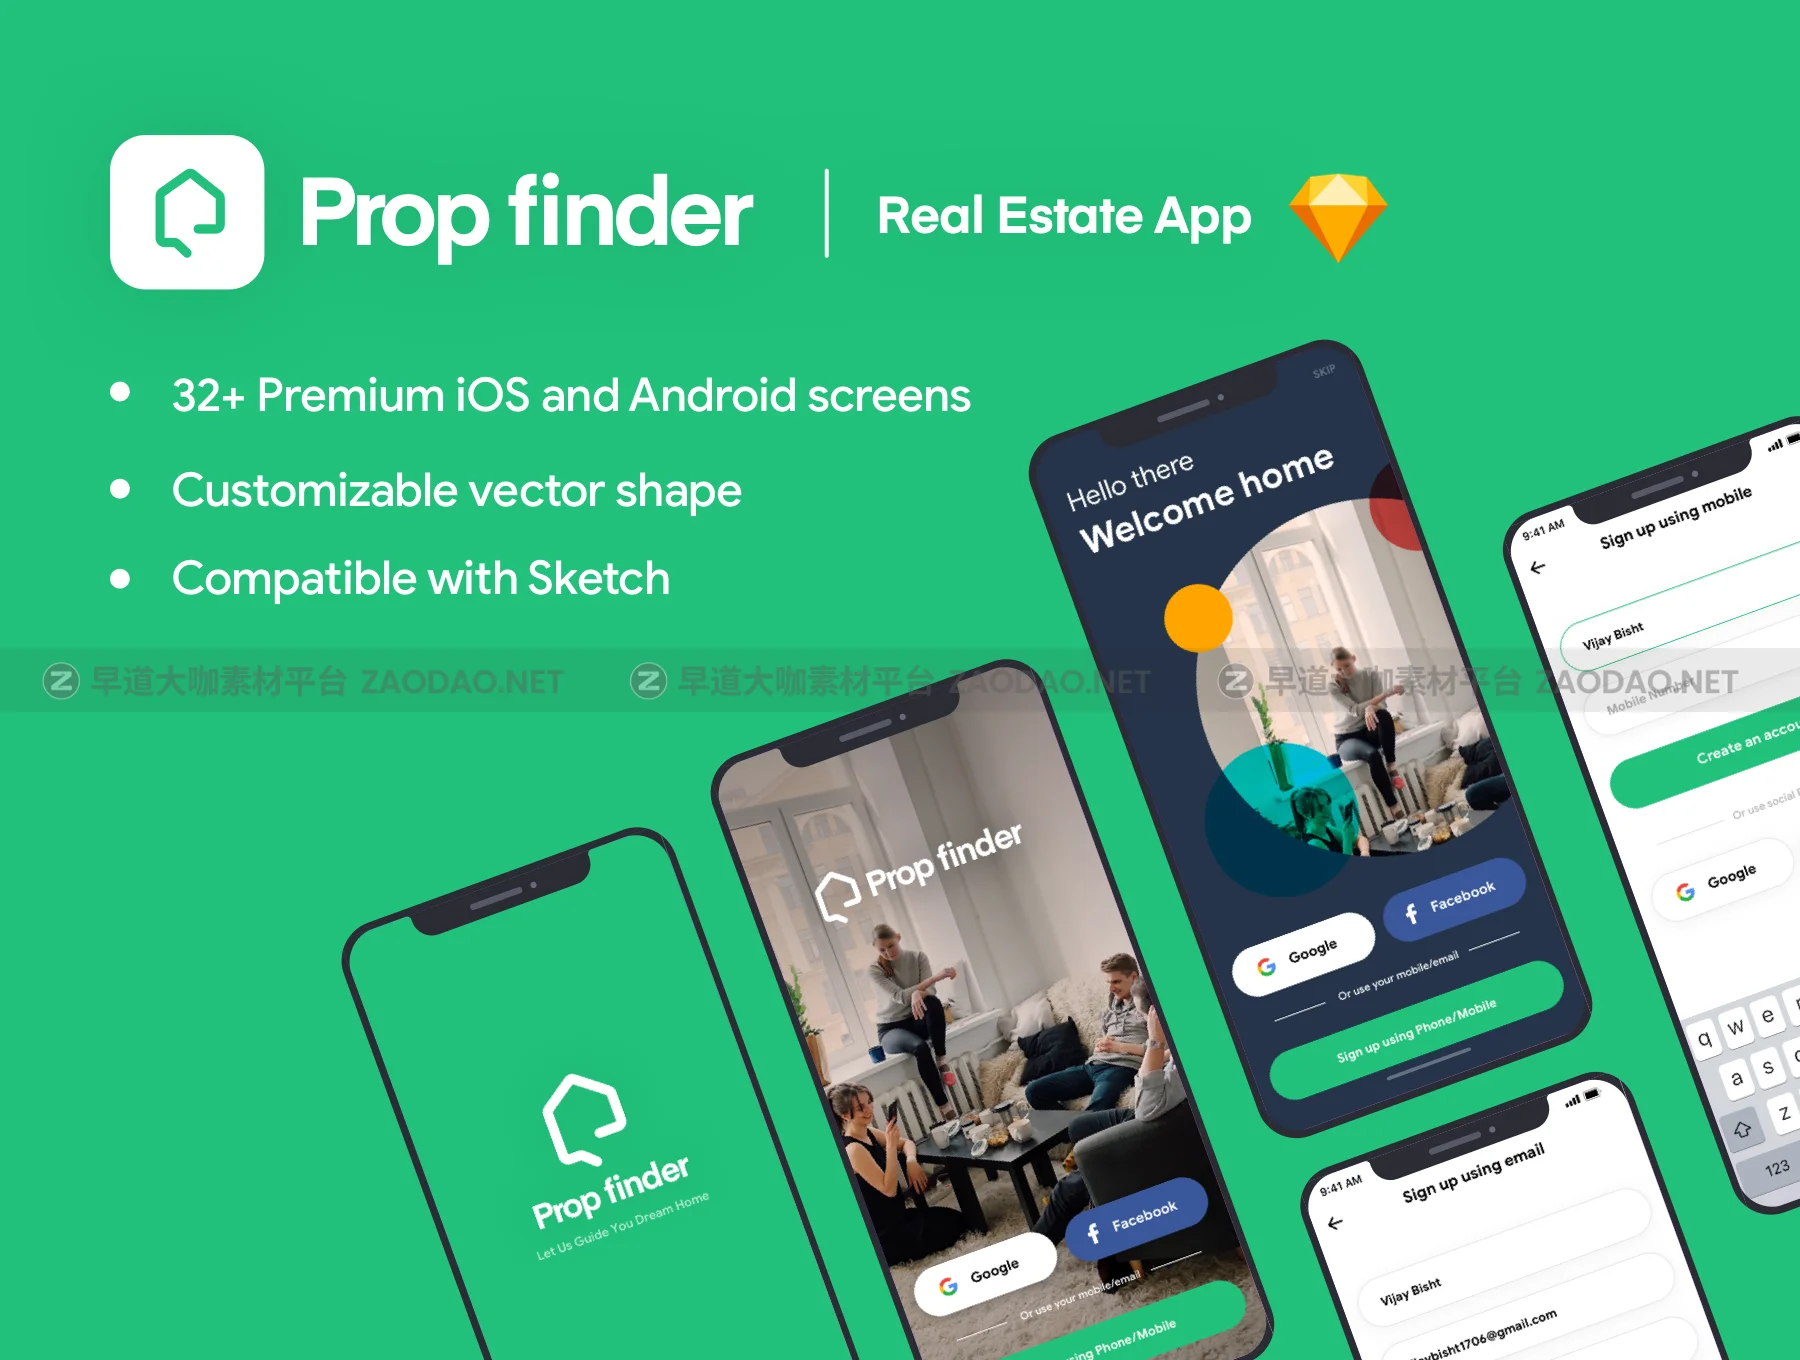 精选房地产室内设计在线交易平台苹果手机APP UI工具包 Prop Finder iOS Premium App插图